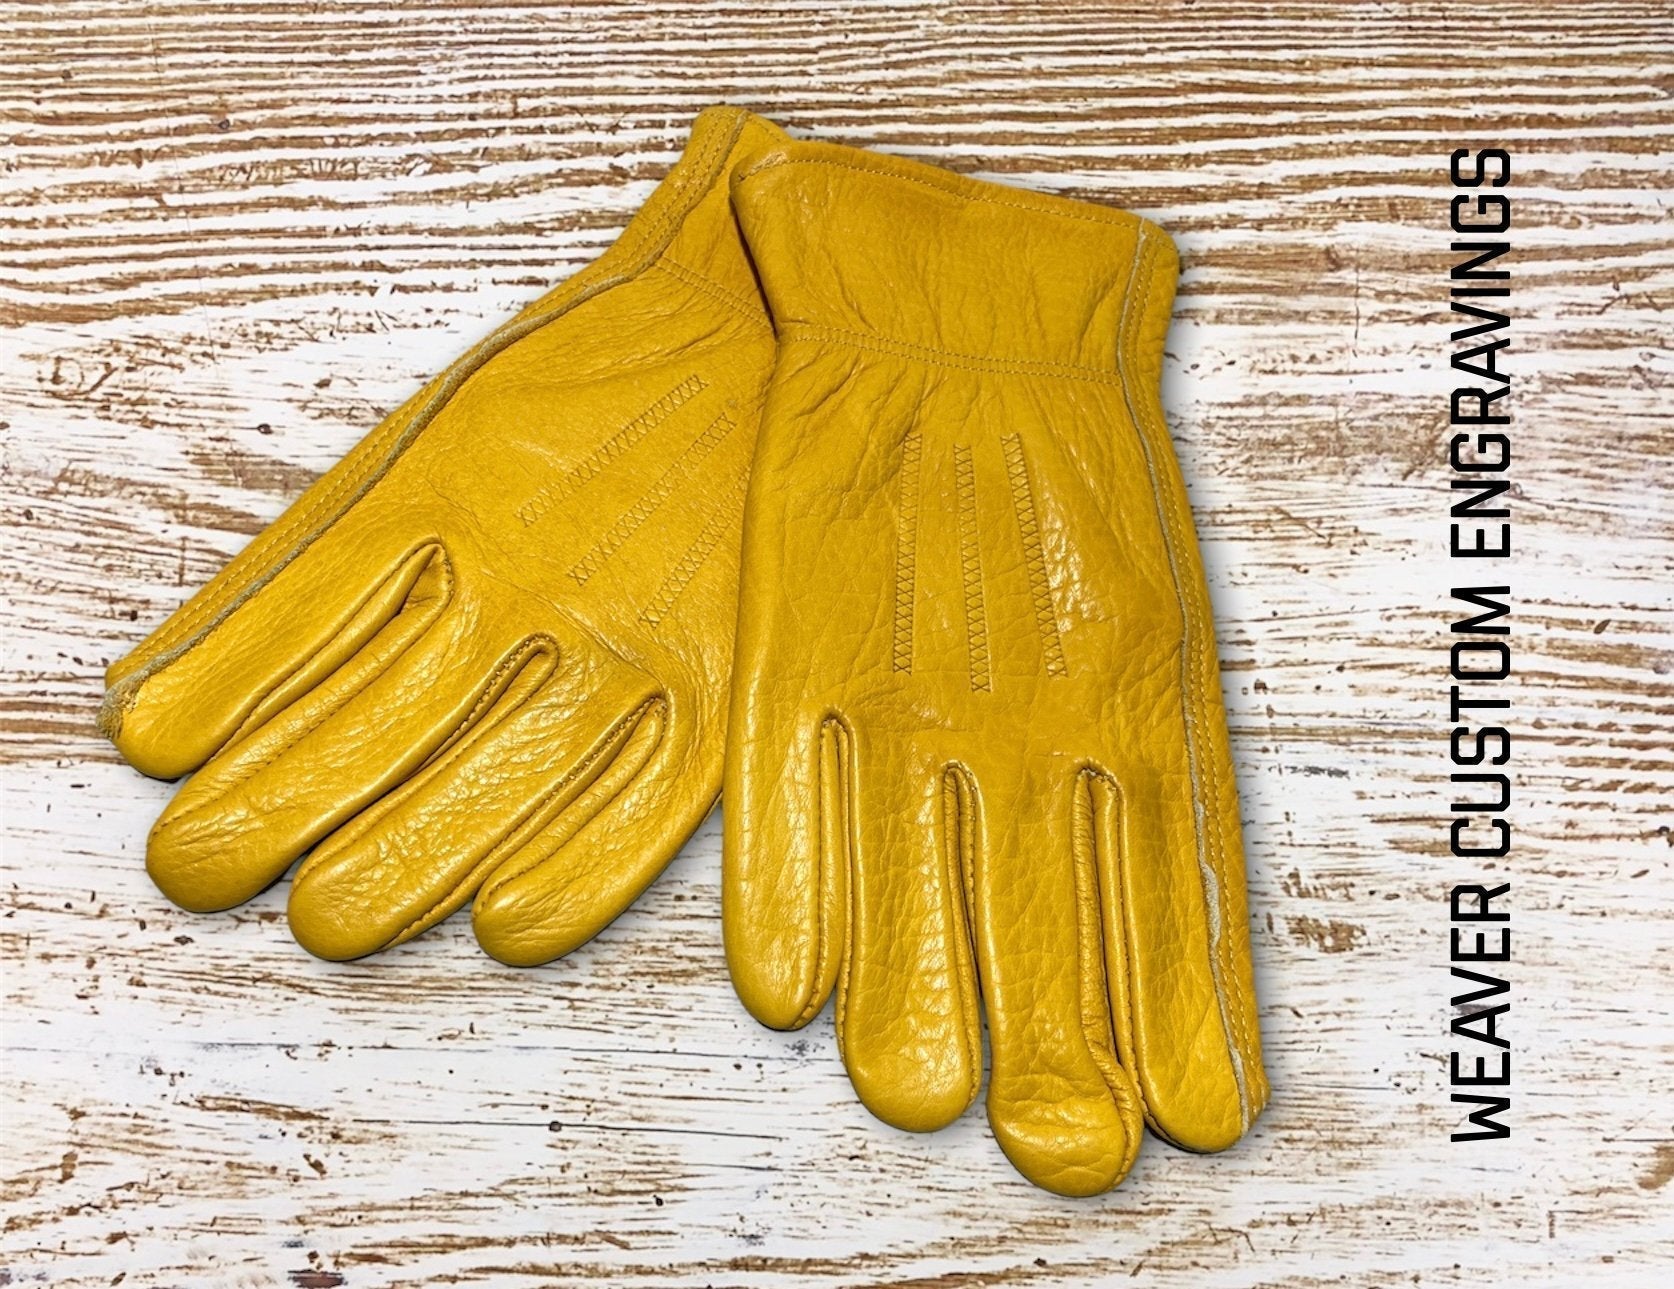 Custom Laser-Engraved Gloves - Weaver Custom Engravings